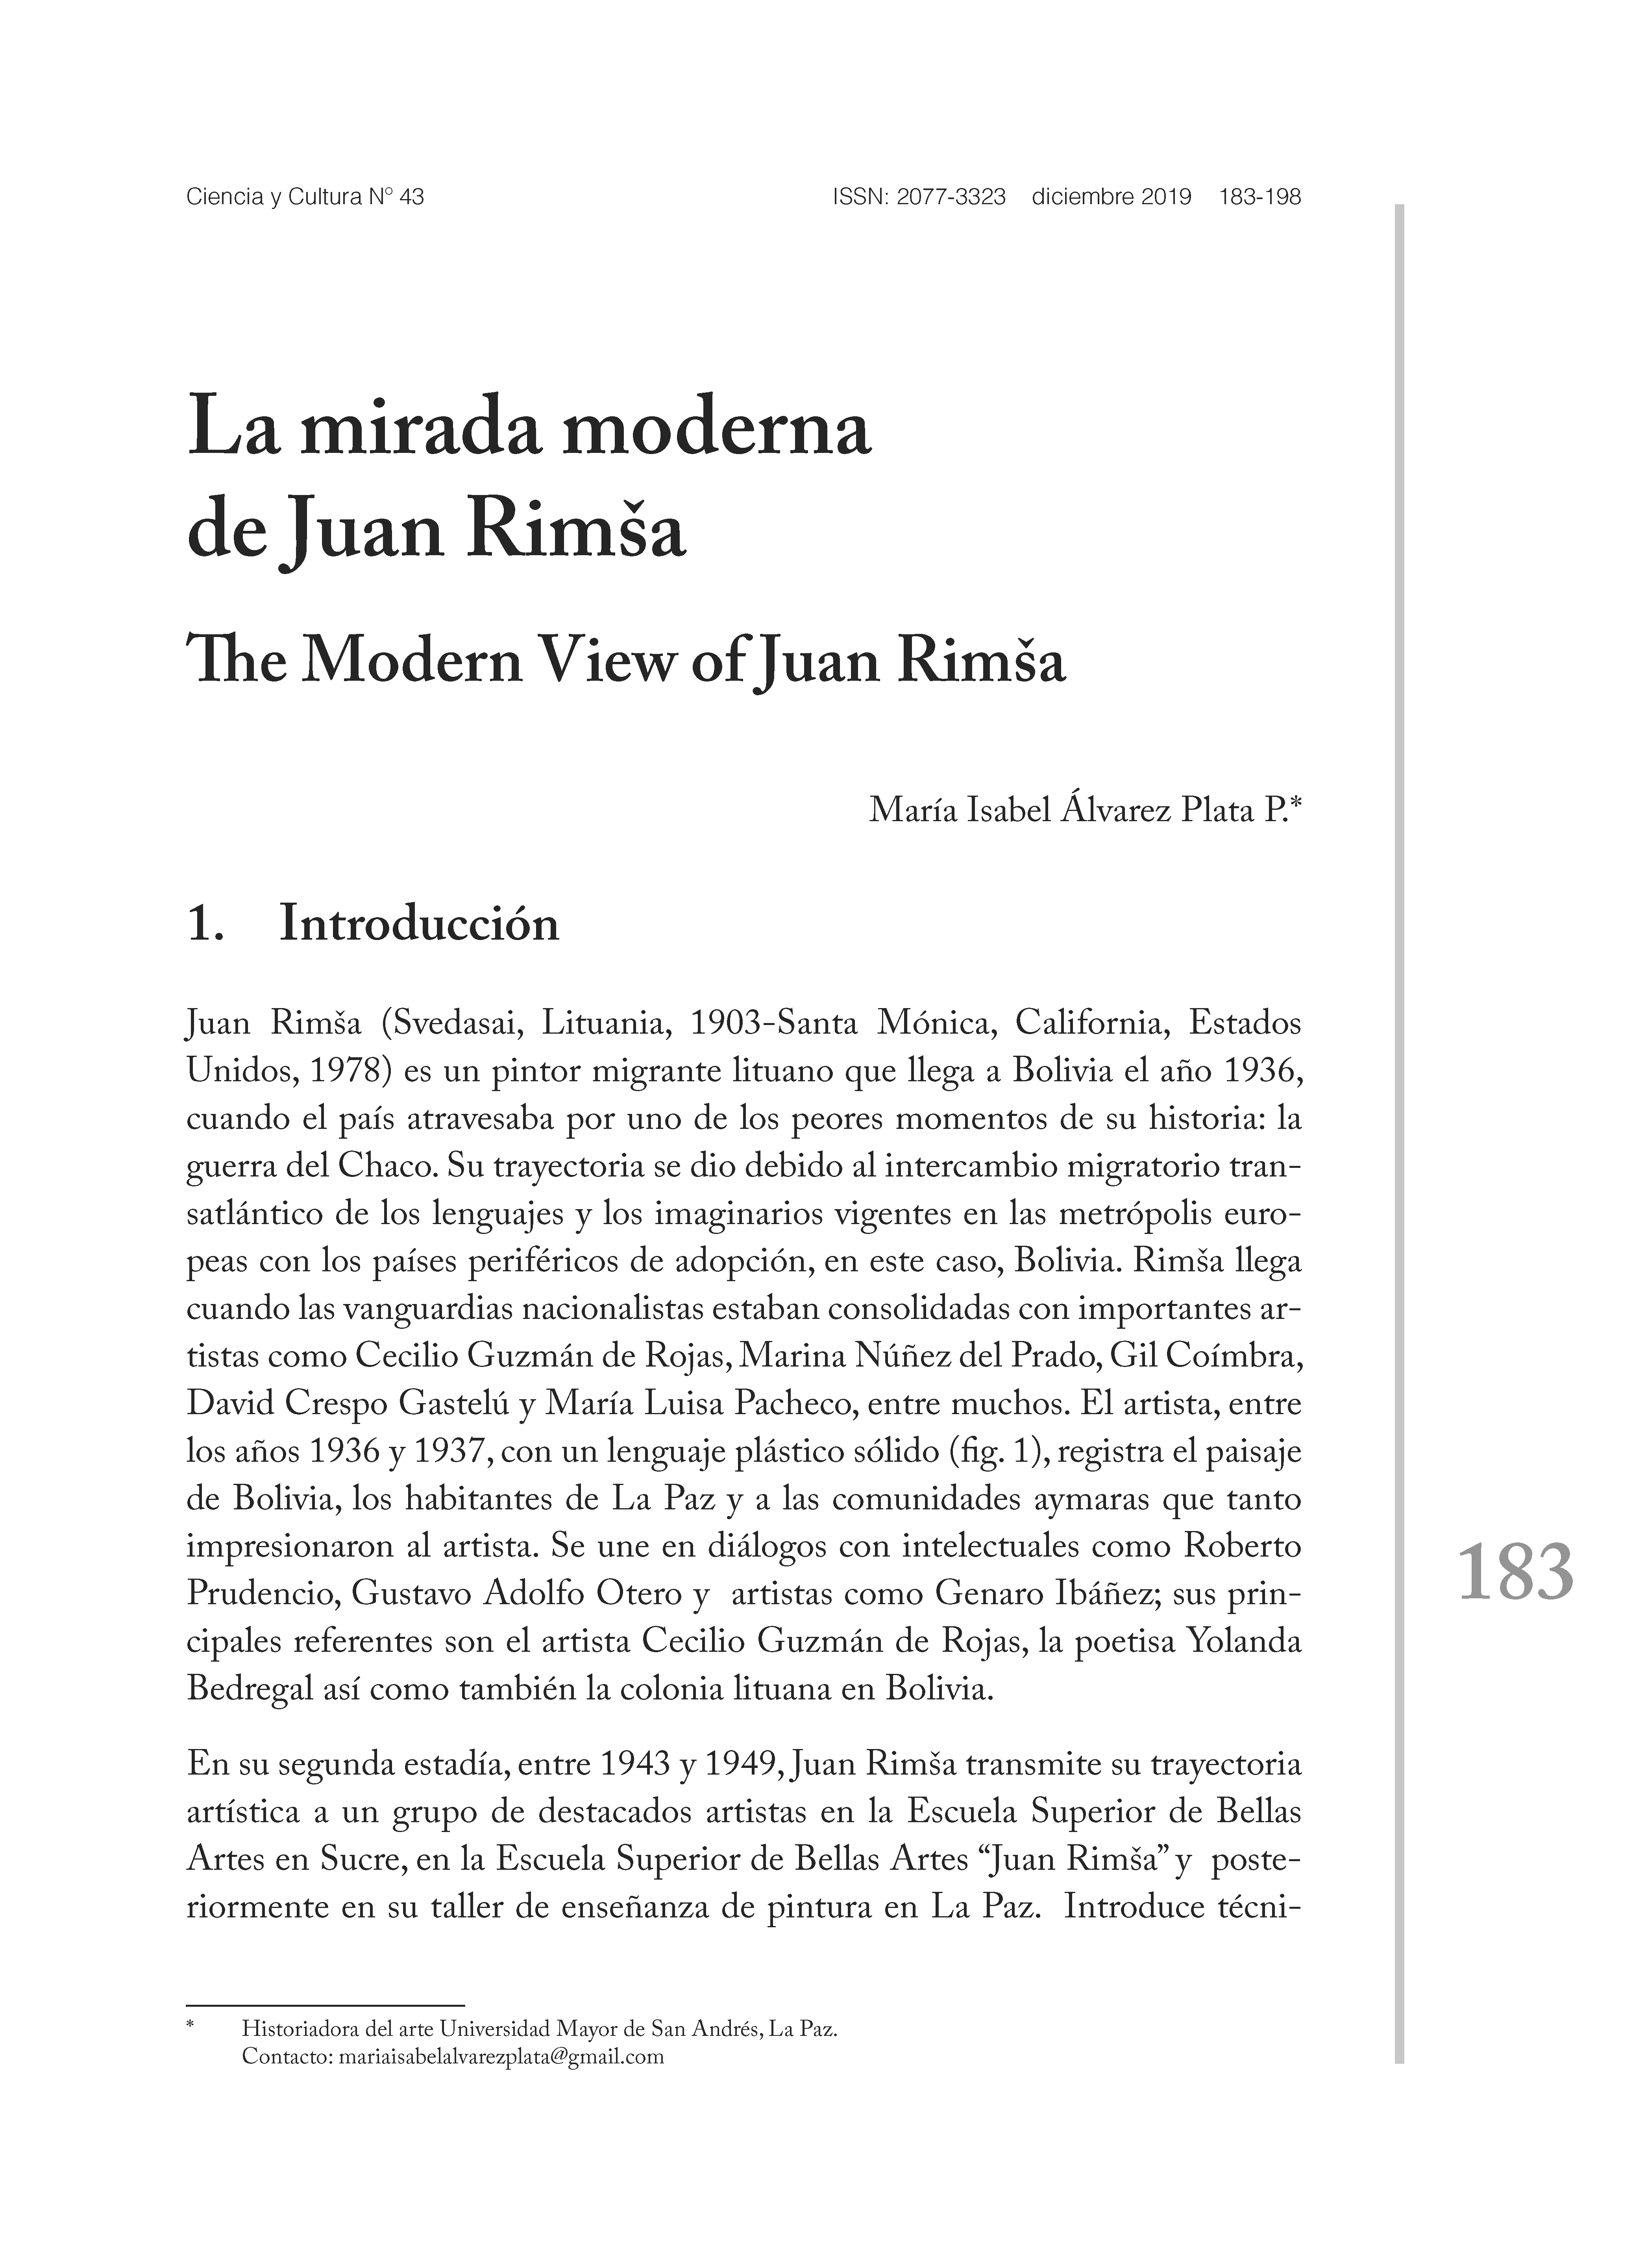 La mirada moderna de Juan Rimša